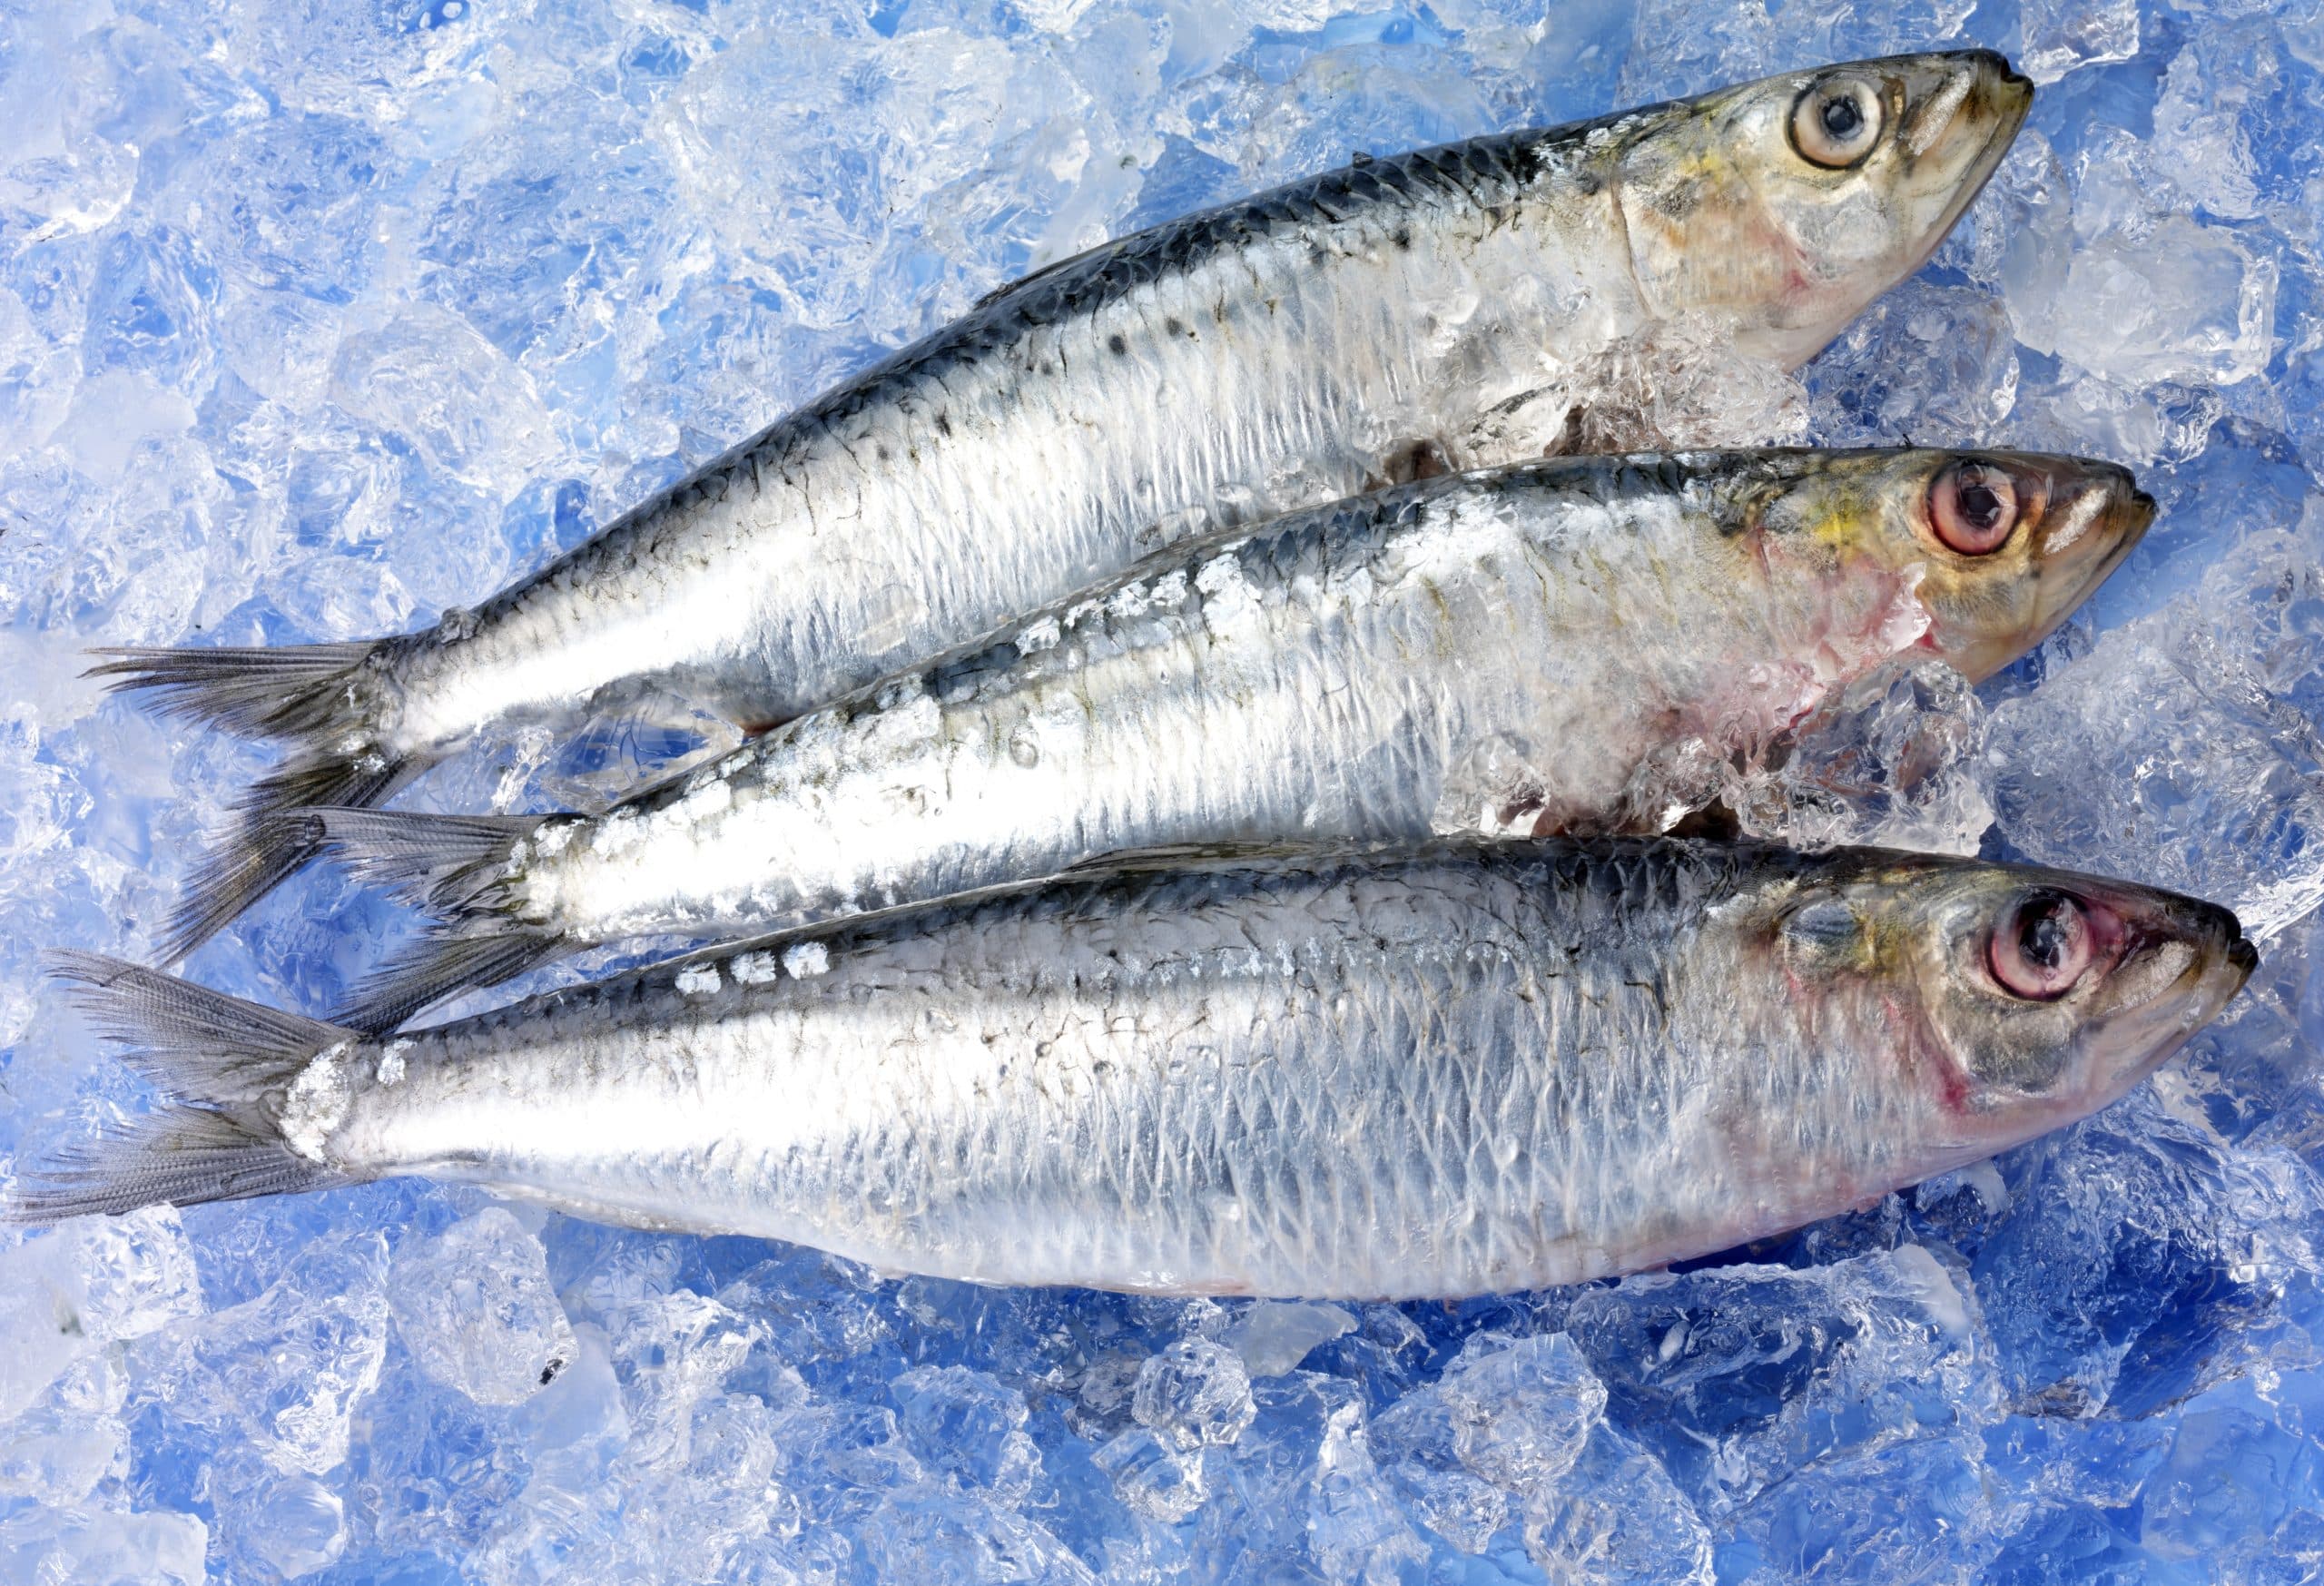 Cuáles son los beneficios de consumir pescado congelado? - Sanchez de la  Campa, Pescados y Mariscos, Gamba blanca. Huelva.